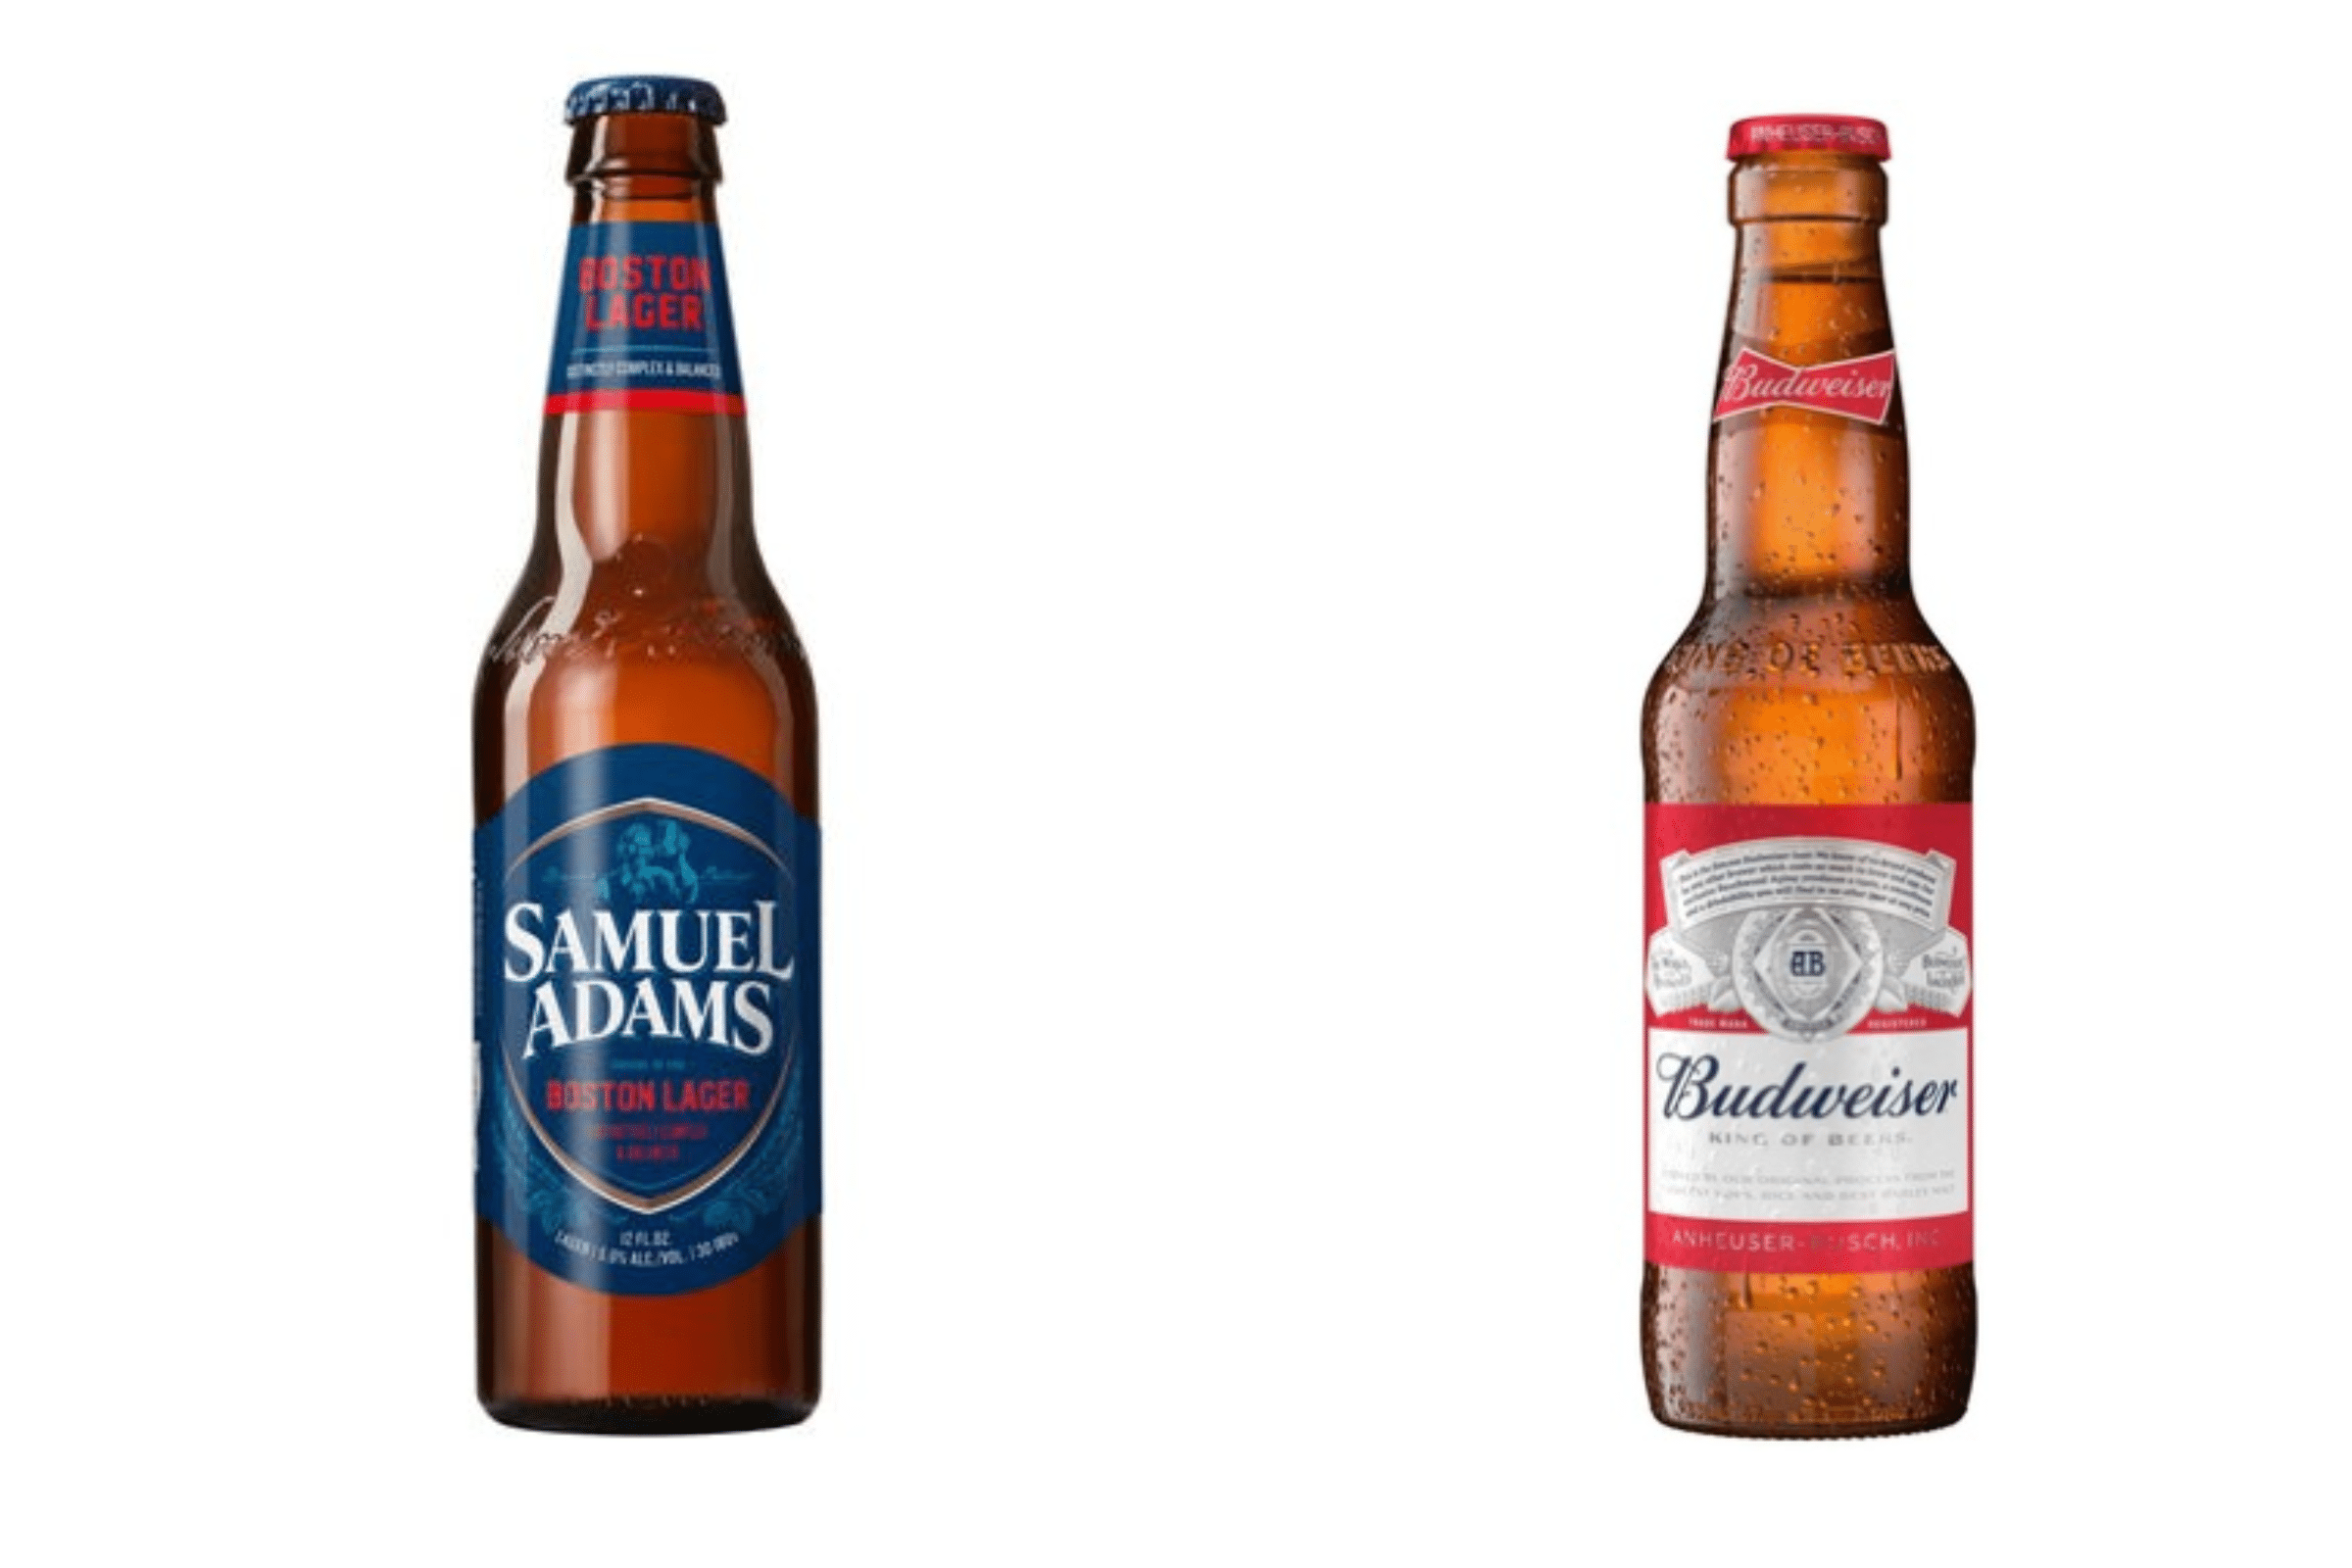 Sam Adams Boston Lager vs Budweiser - Taste, ABV, Calories, Carbs, Ingredients